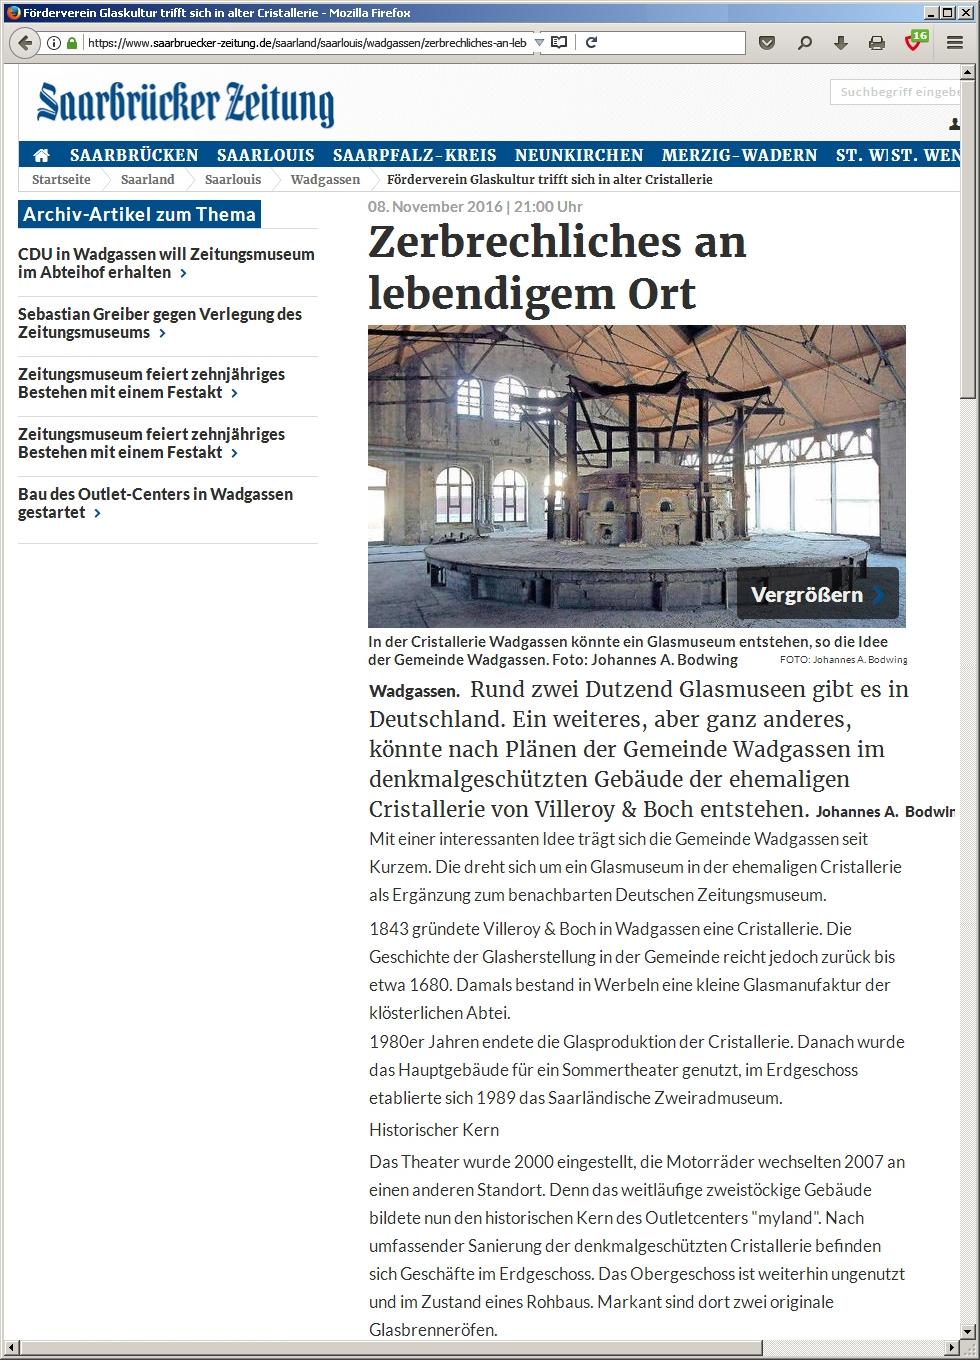 Pressglas-Korrespondenz 2017-1 Abb. 2017-1/49-02 Saarbrücker Zeitung / Völklingen und Warndt, 08.11.2016, Johannes A.